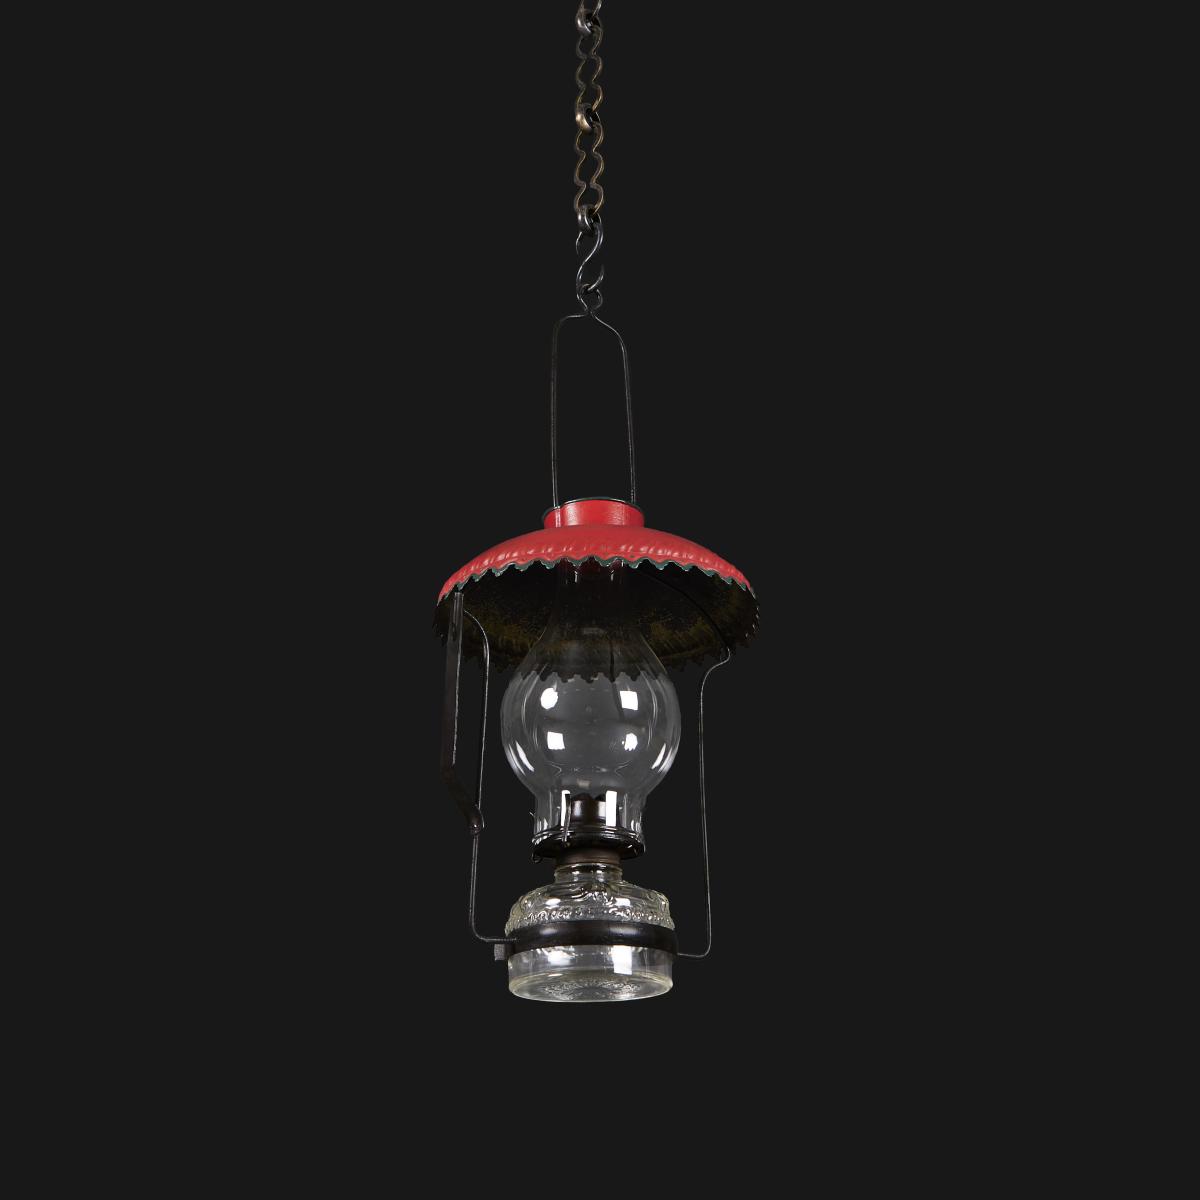 An Edwardian Campaign Hanging Lantern